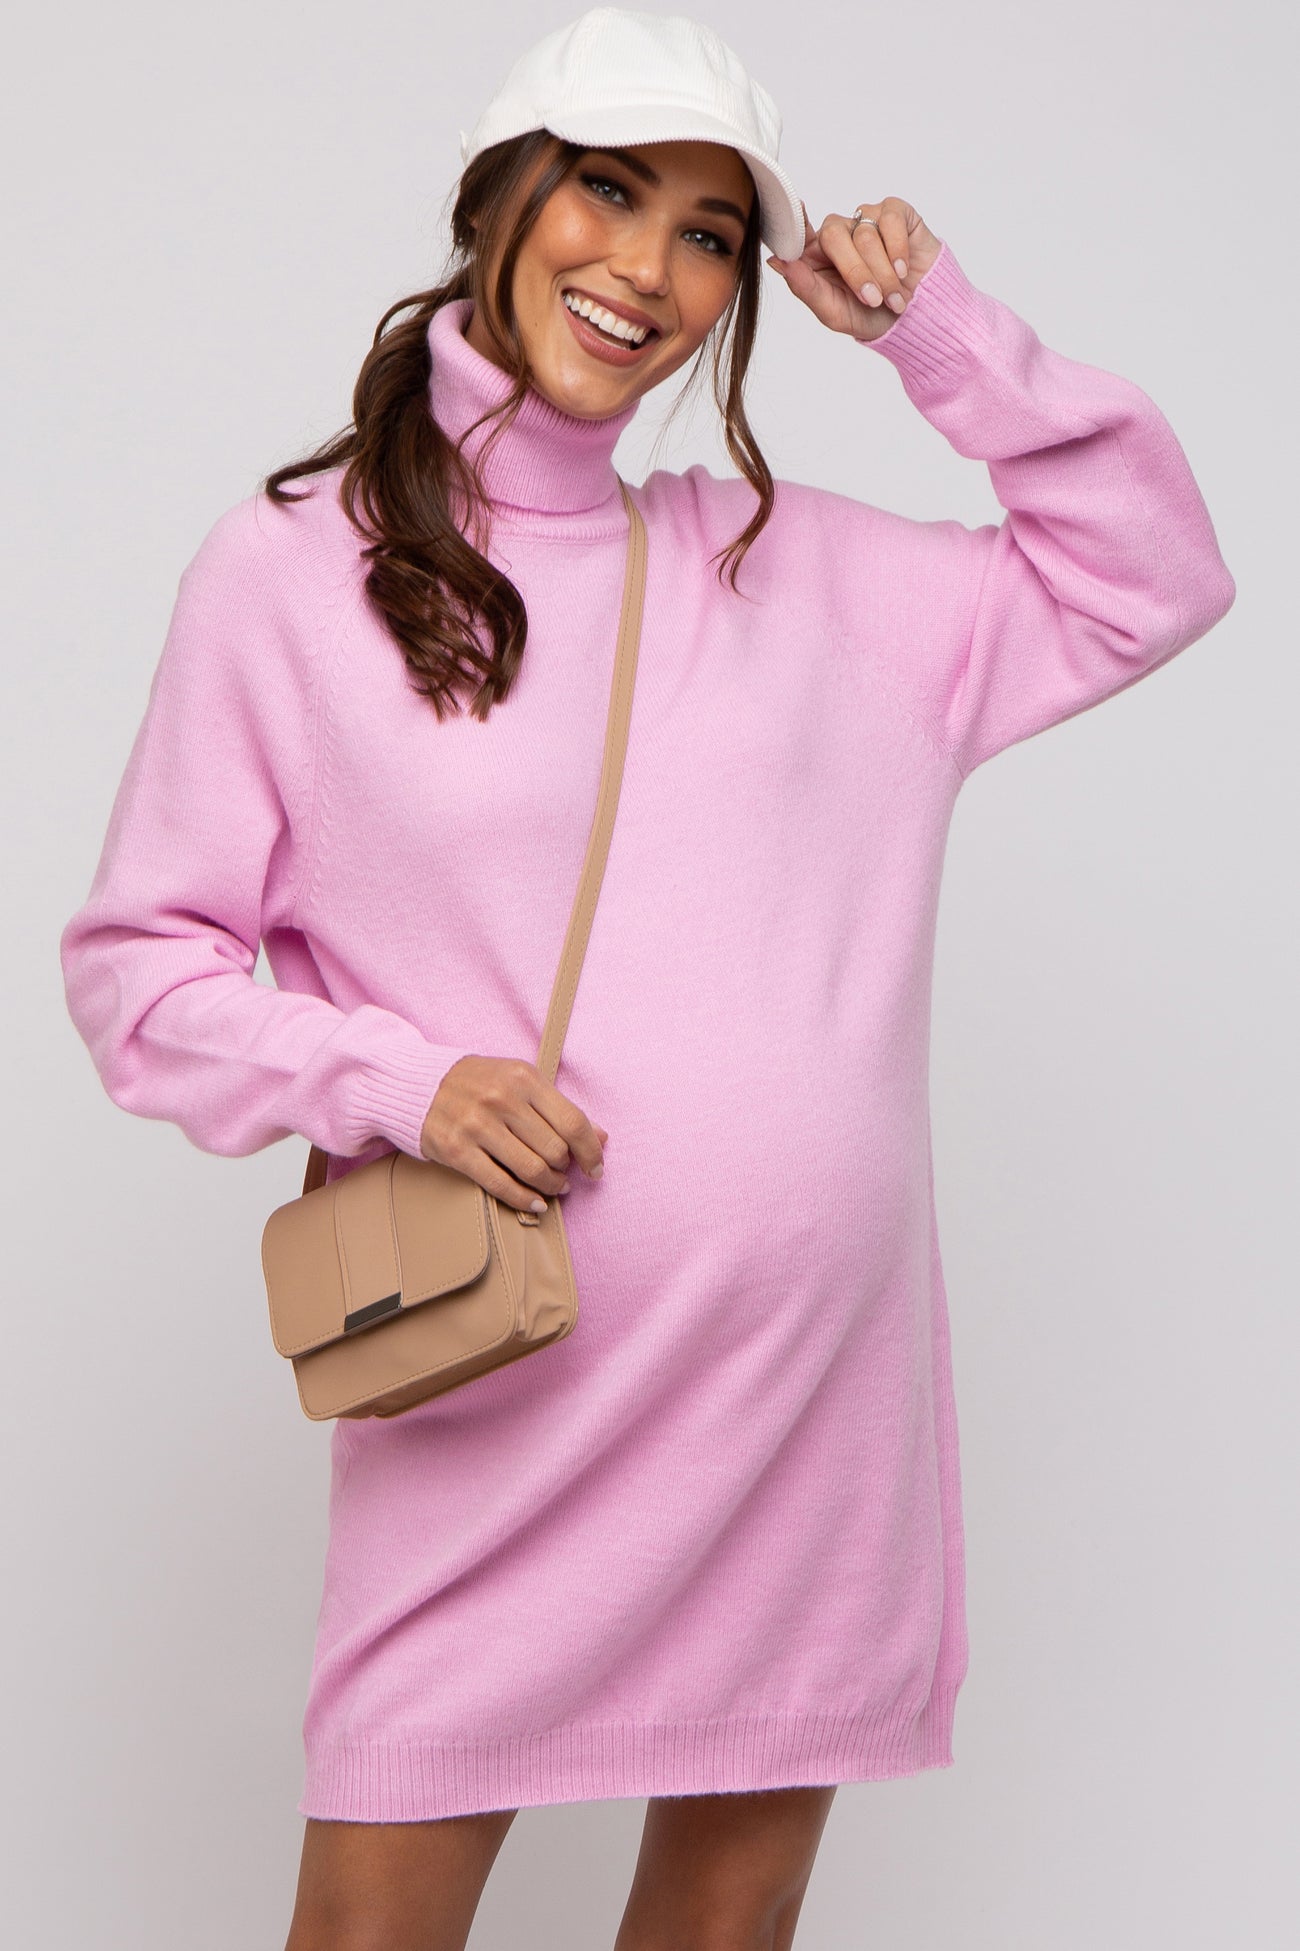 Pink Knit Long Sleeve Turtleneck Maternity Sweater Dress– PinkBlush